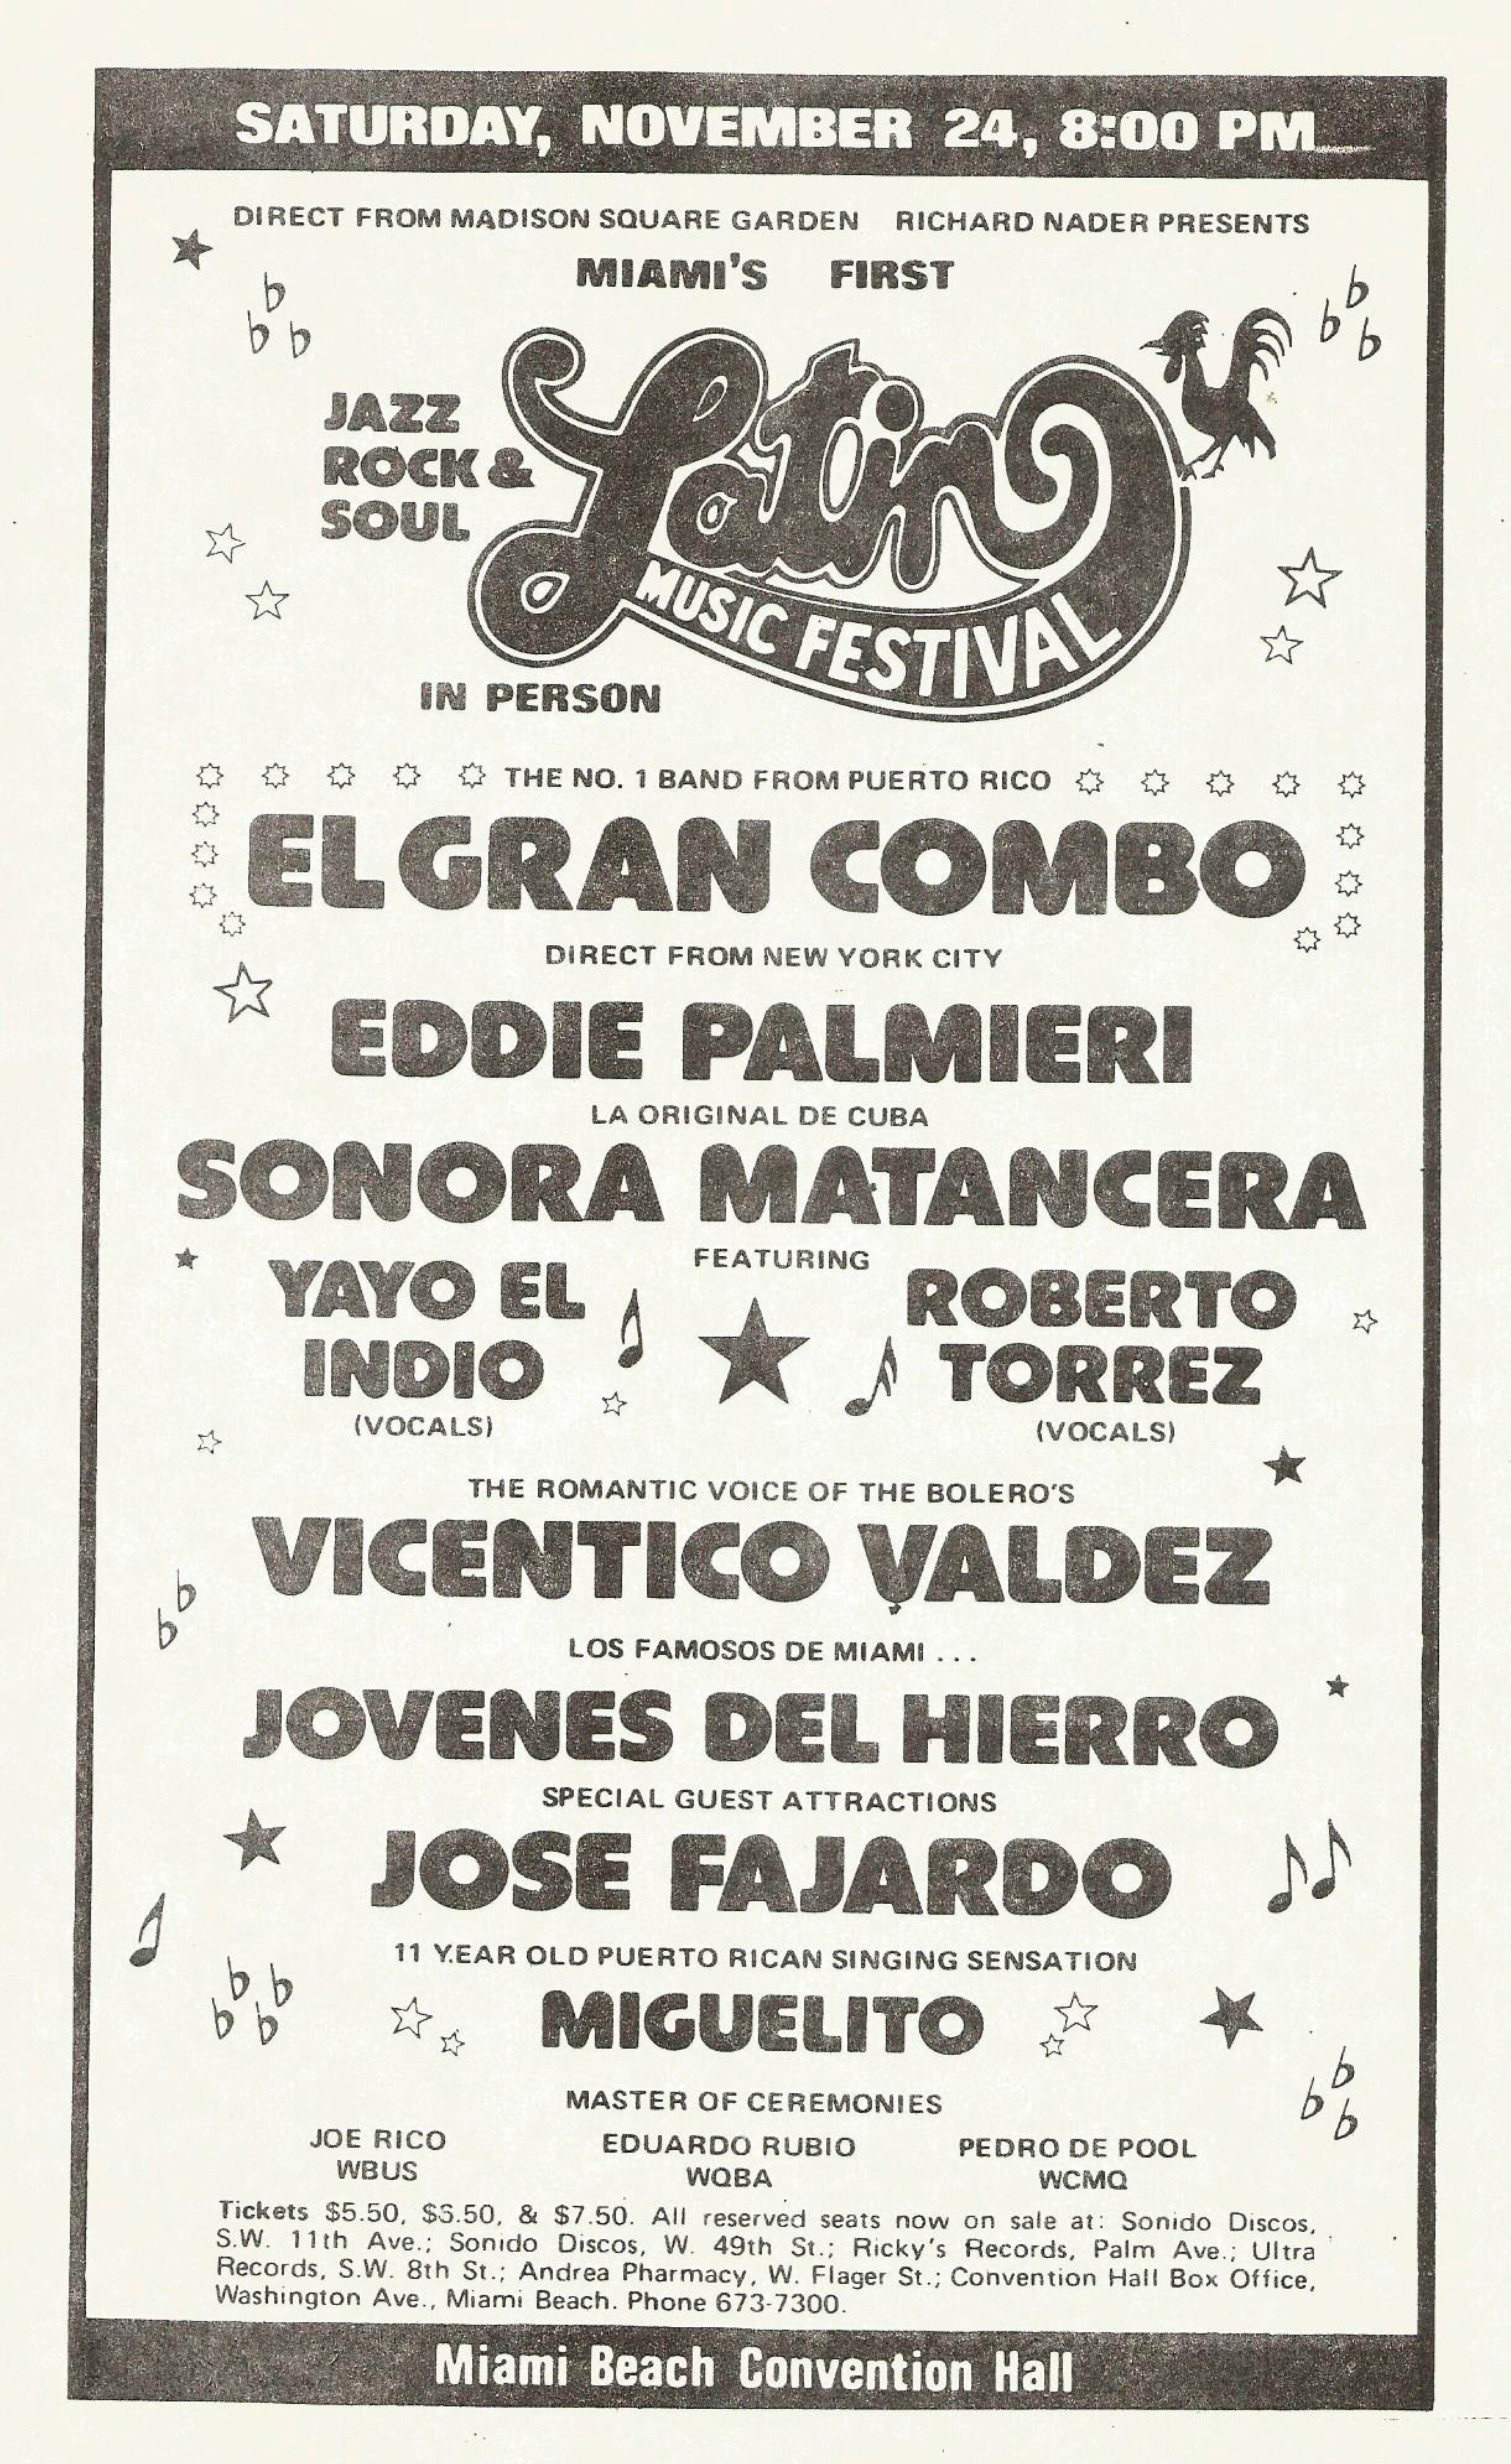 Cartel del Latin Music Festival de Miami (1972), donde actuó Miguelito junto a Eddie Palmieri y El Gran Combo.